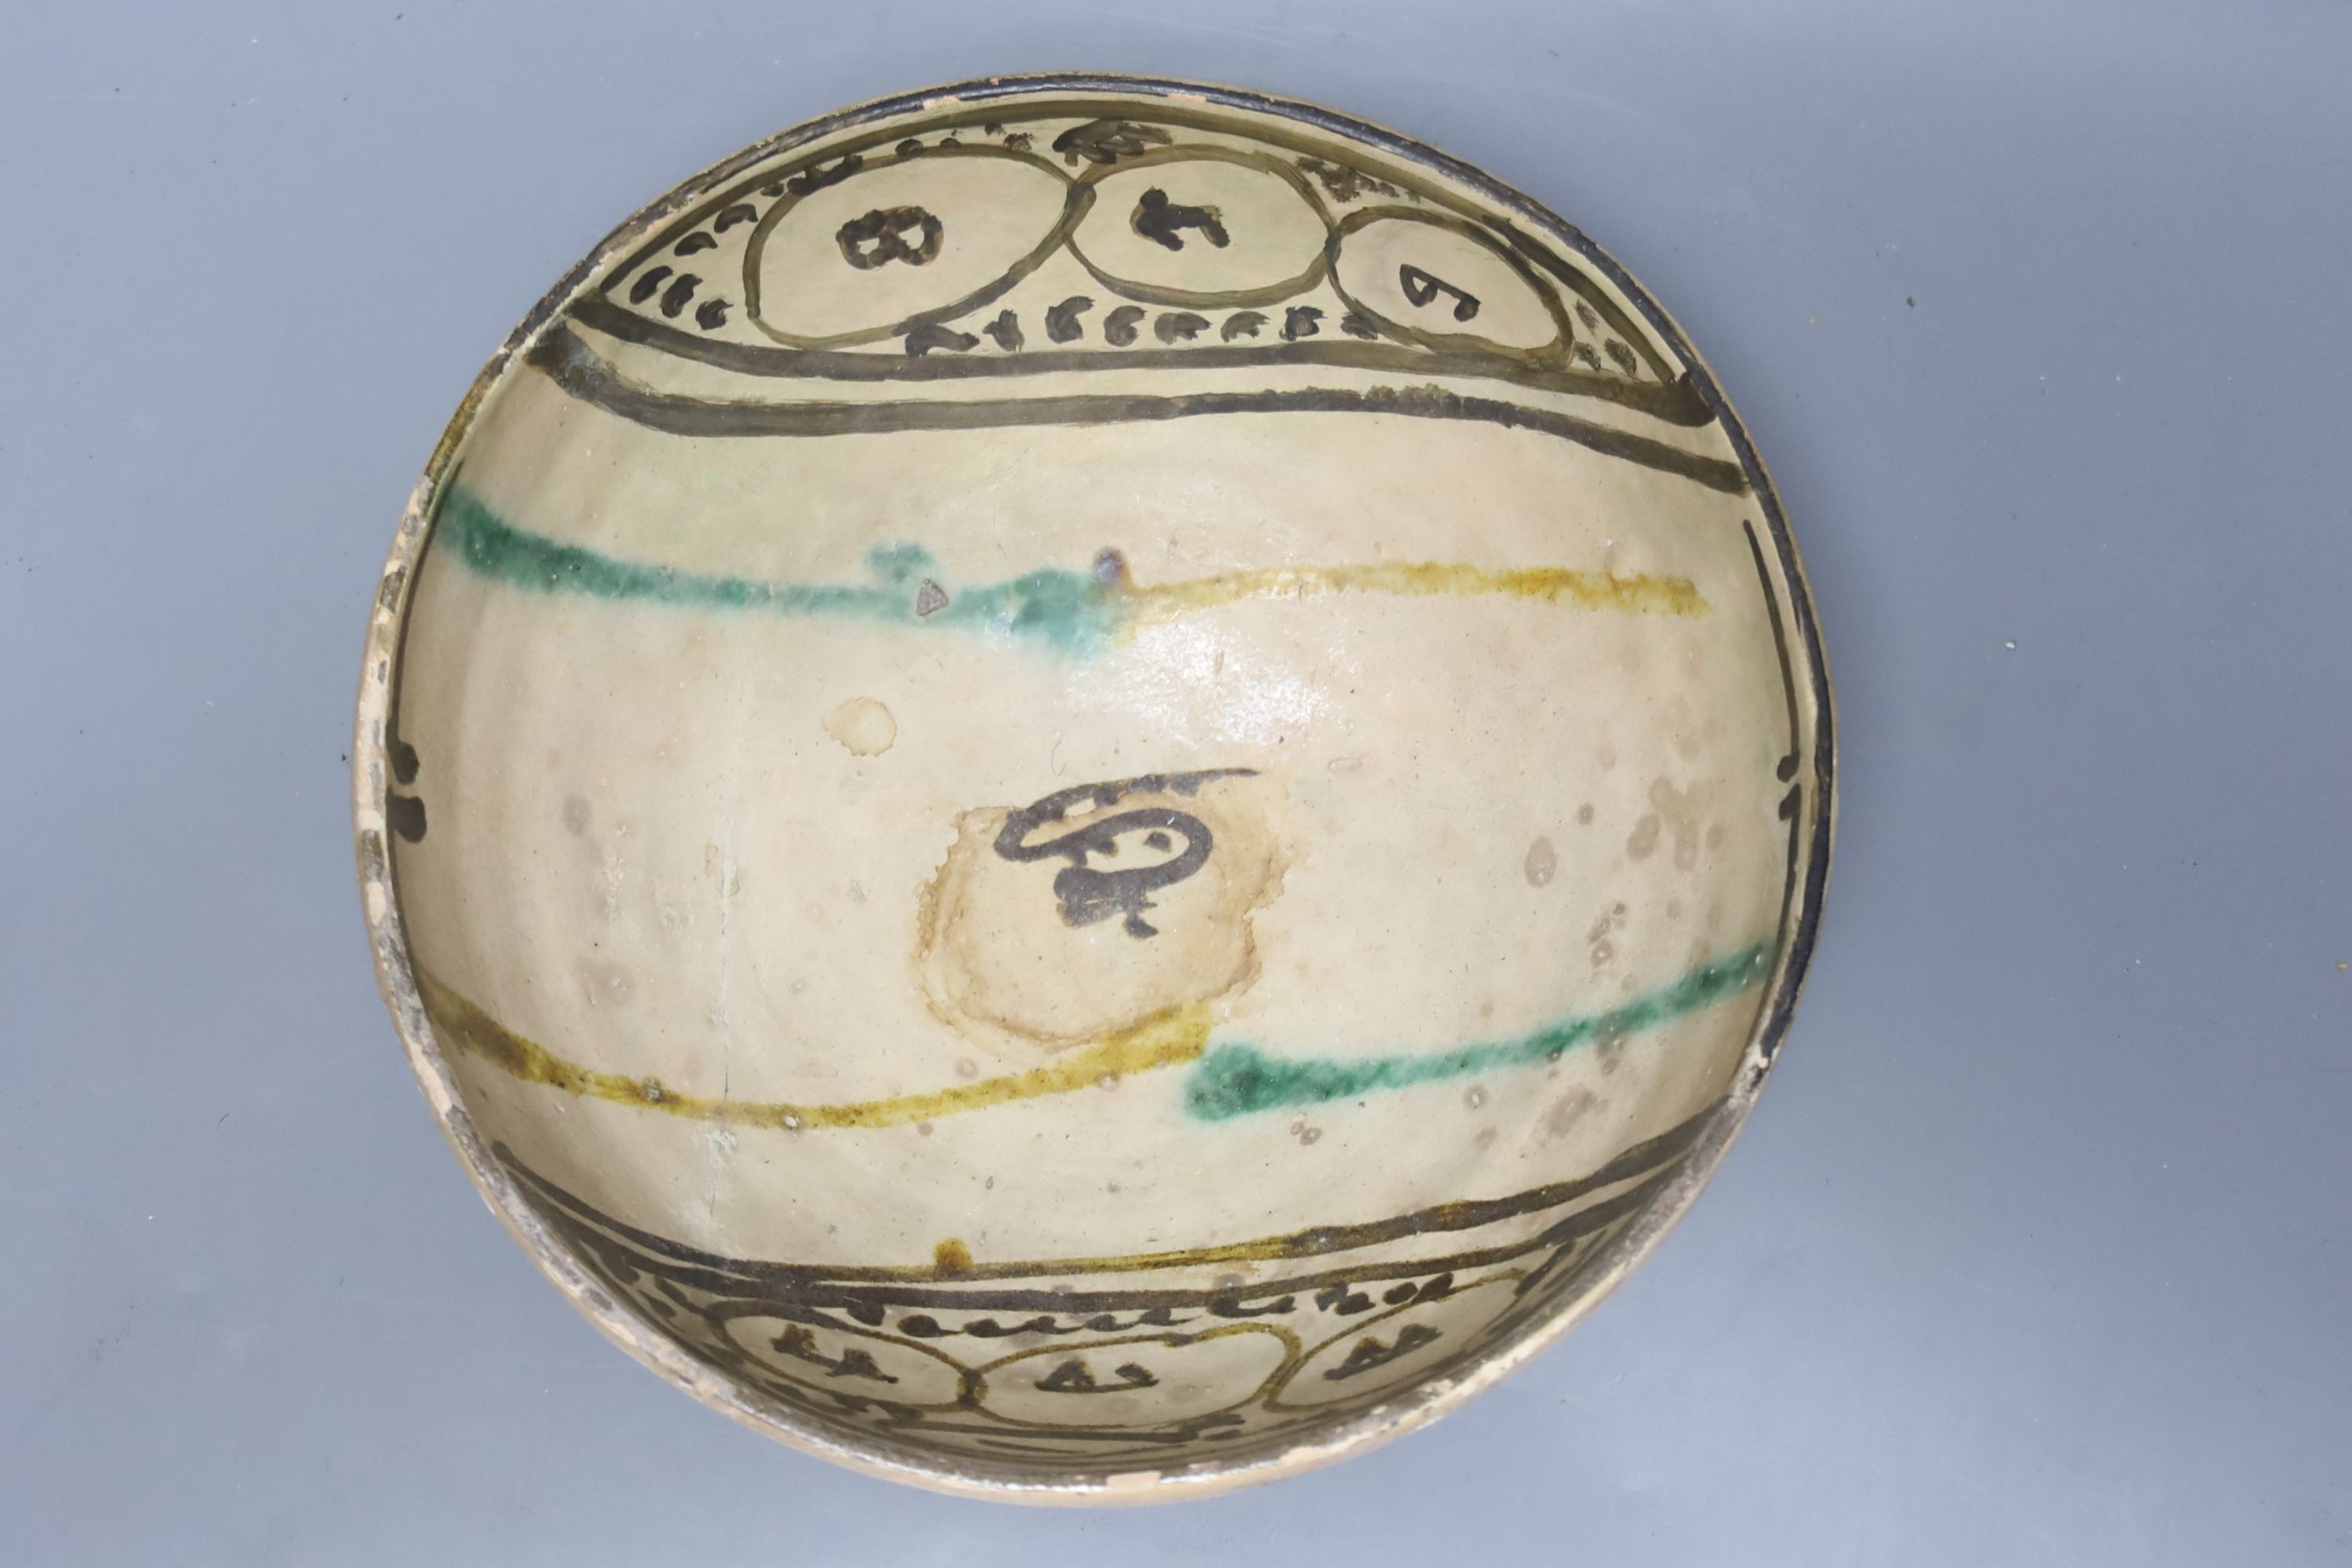 A Persian medieval bowl, diameter 24cm